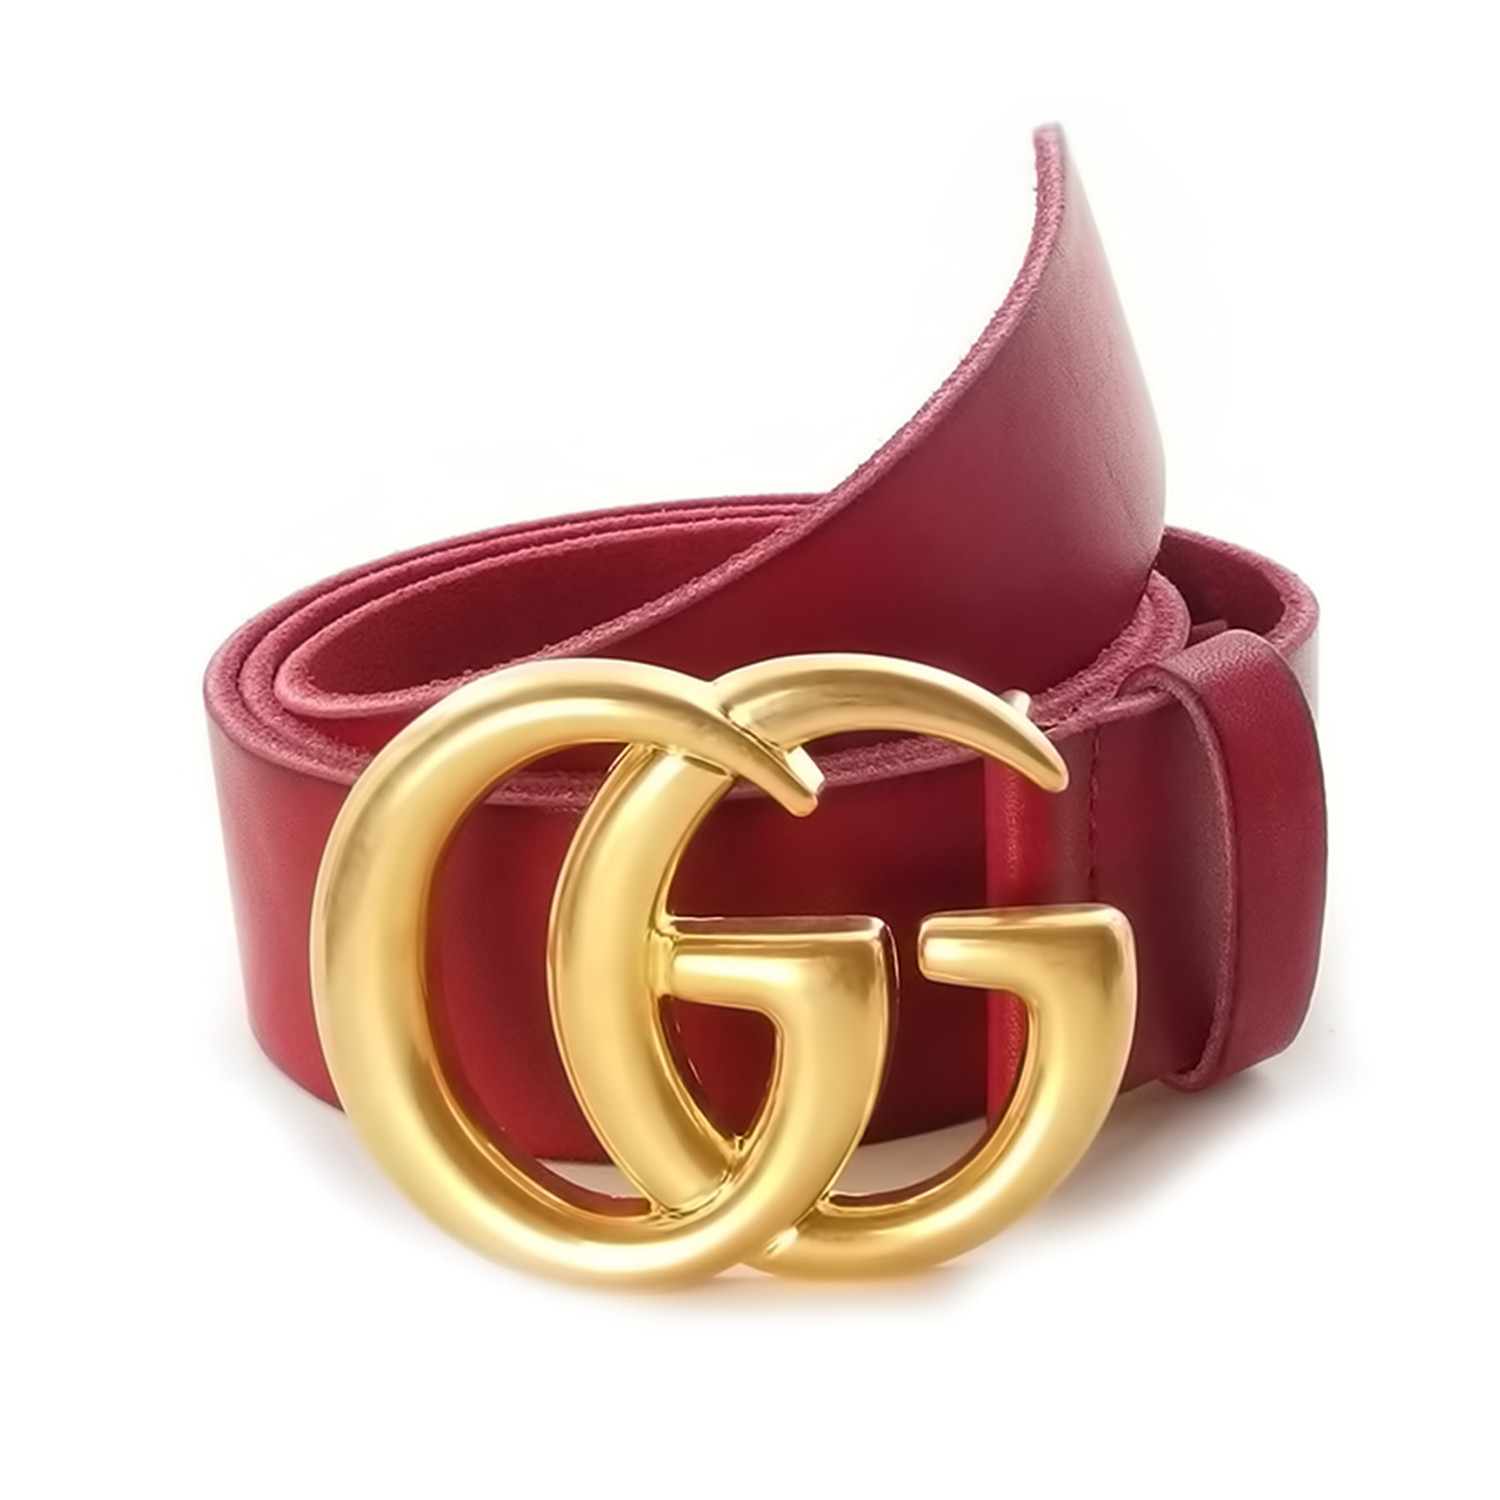 gg belt red